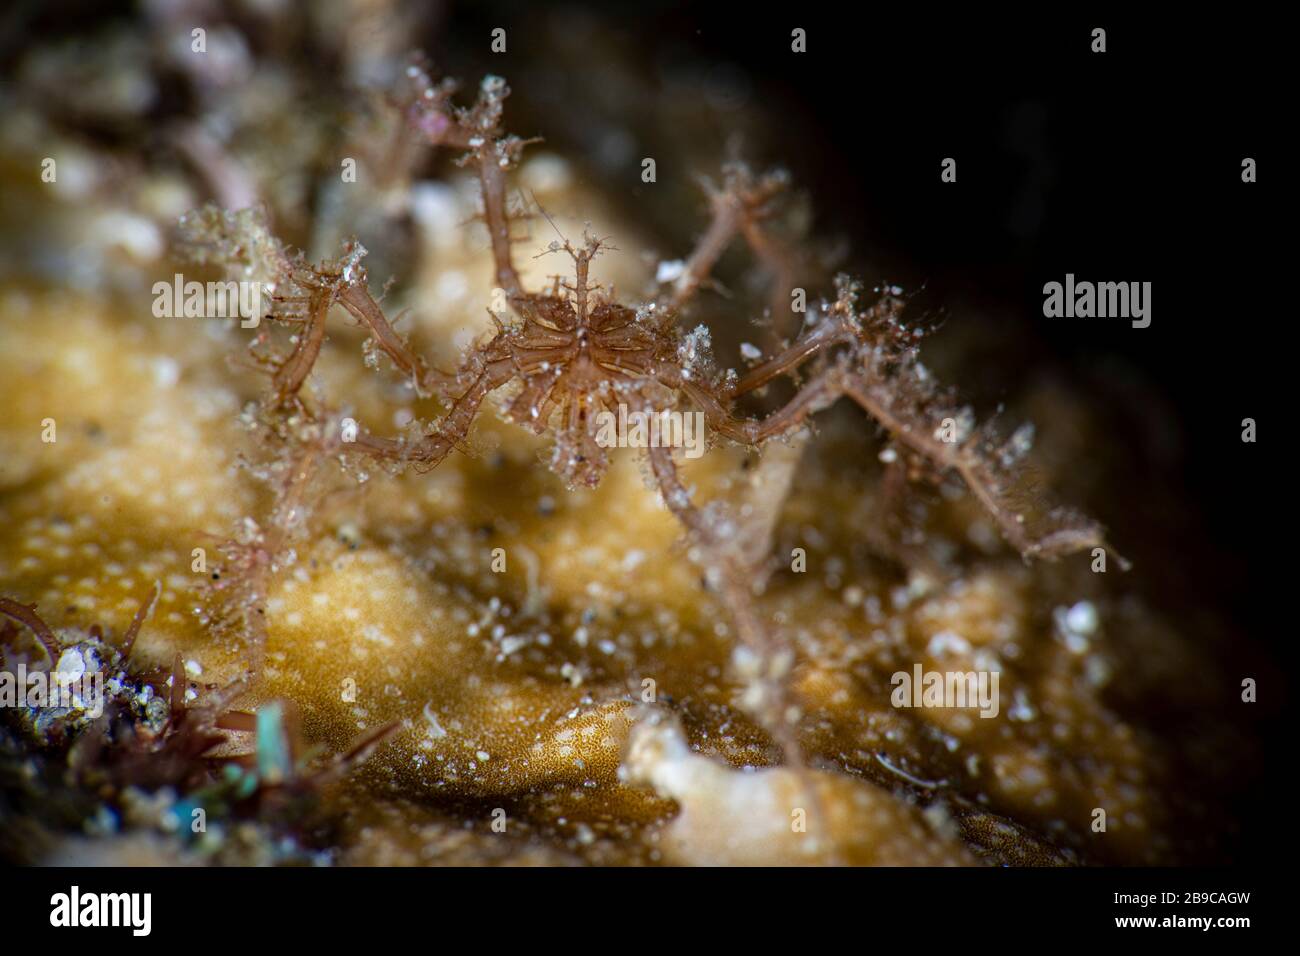 Una araña subacuática caminando sobre el coral, Anilao, Filipinas. Foto de stock